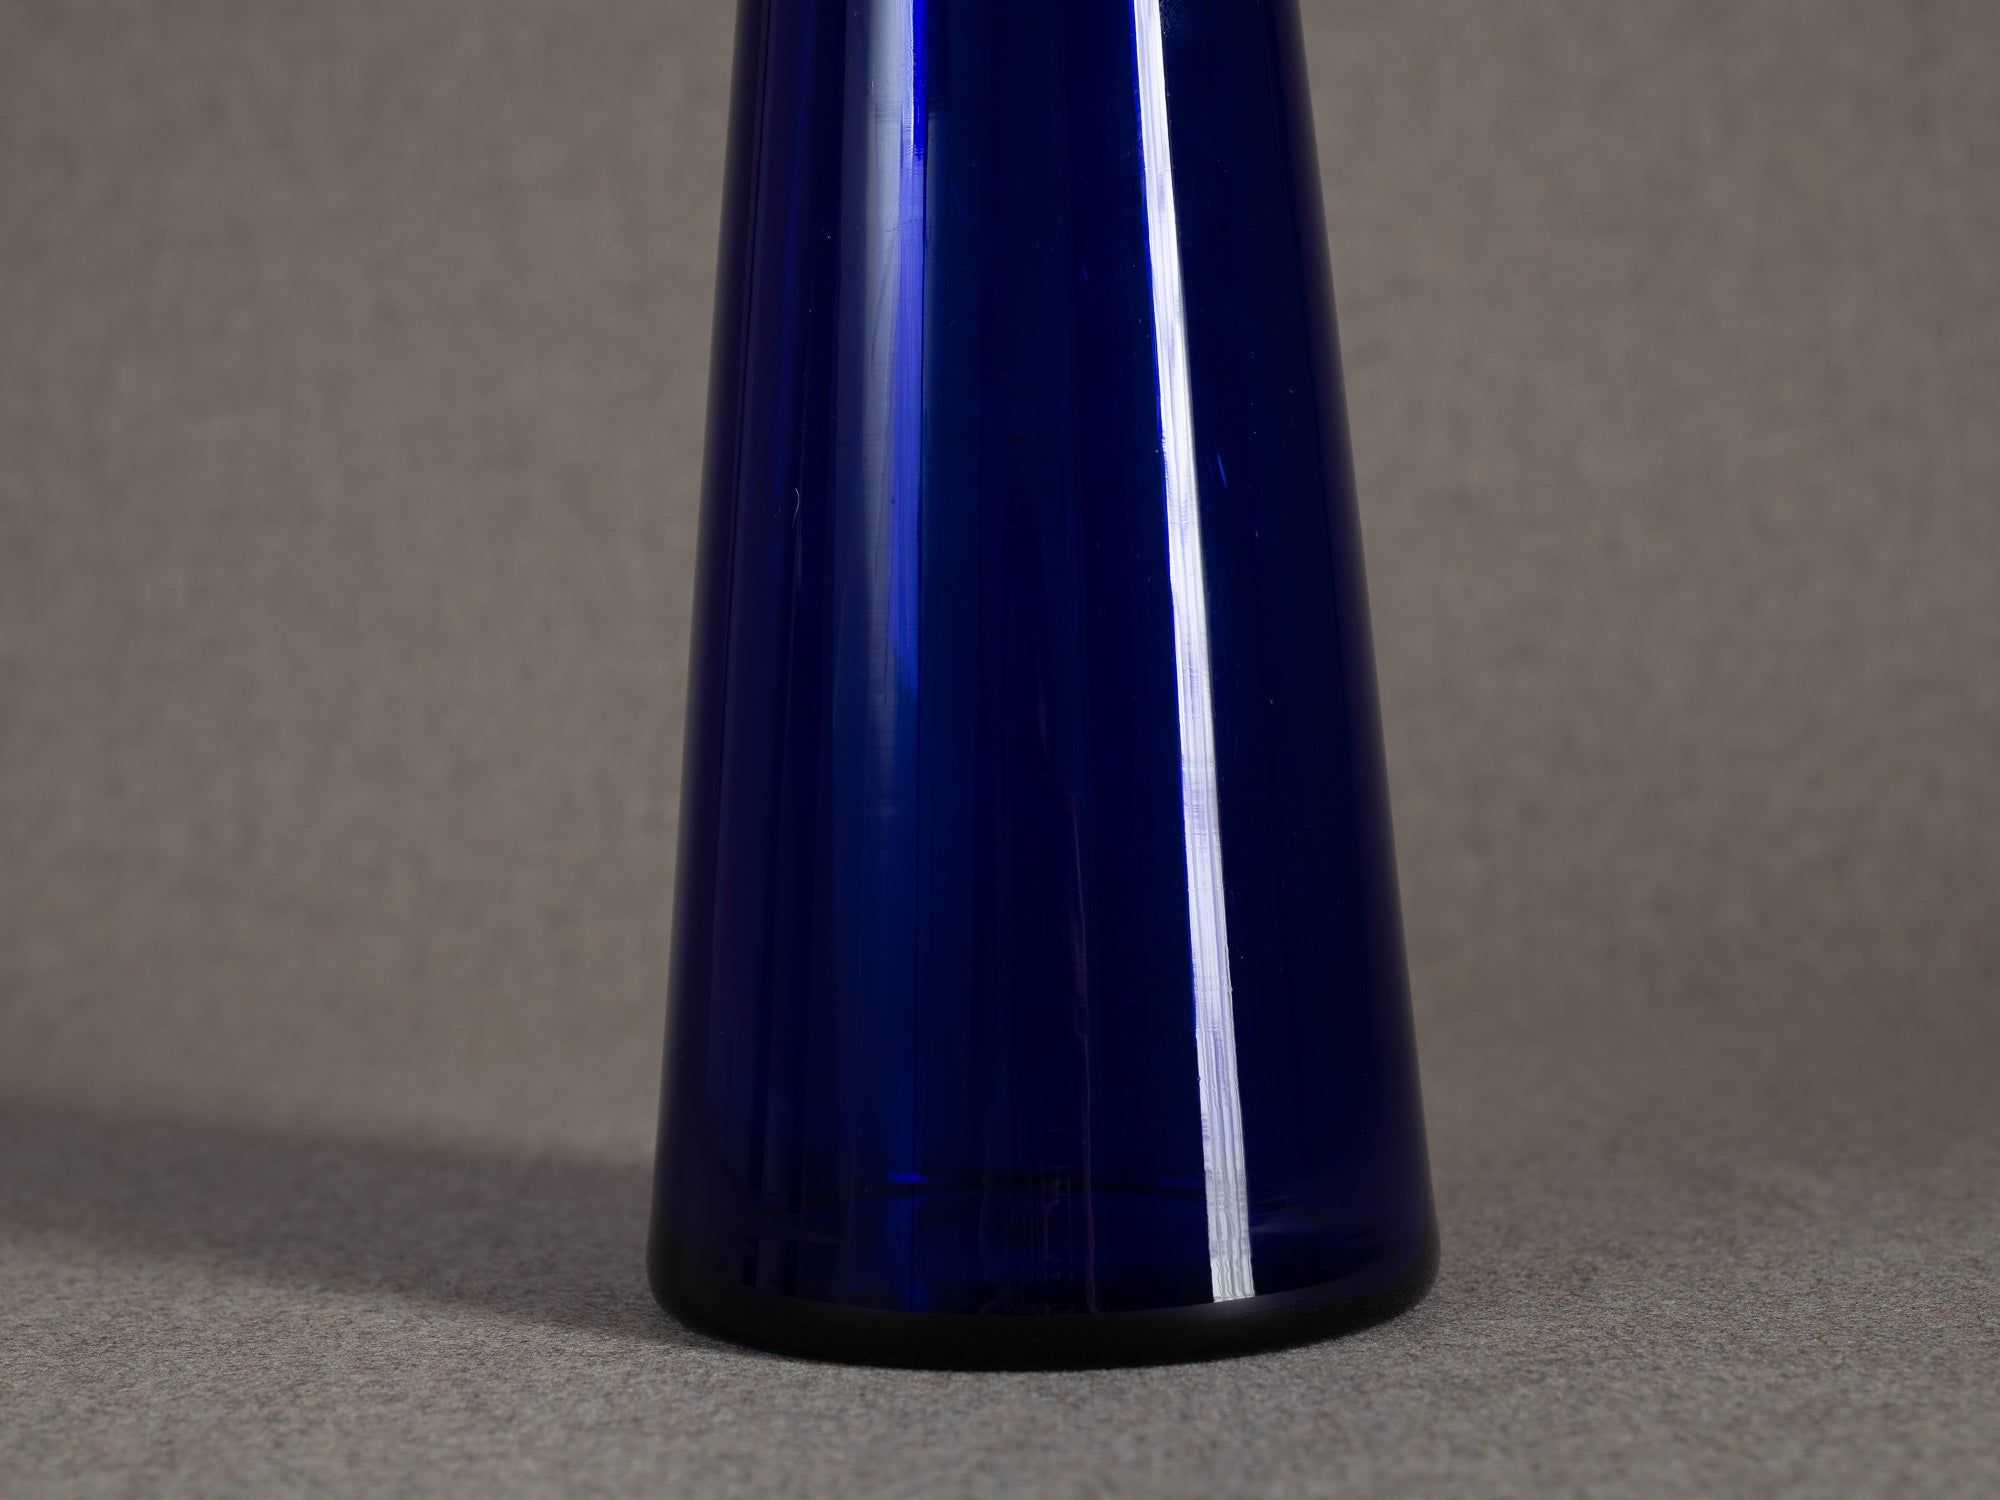 Vase diabolo en cristal bleu, entourage de Kaj Franck & Nuutajärvi Notsjo, Scandinavie (années 1960-70)..Diabolo vase in blue crystal, entourage of Kaj Franck & Nuutajärvi Notsjo, Scandinavia (1960s-70s)